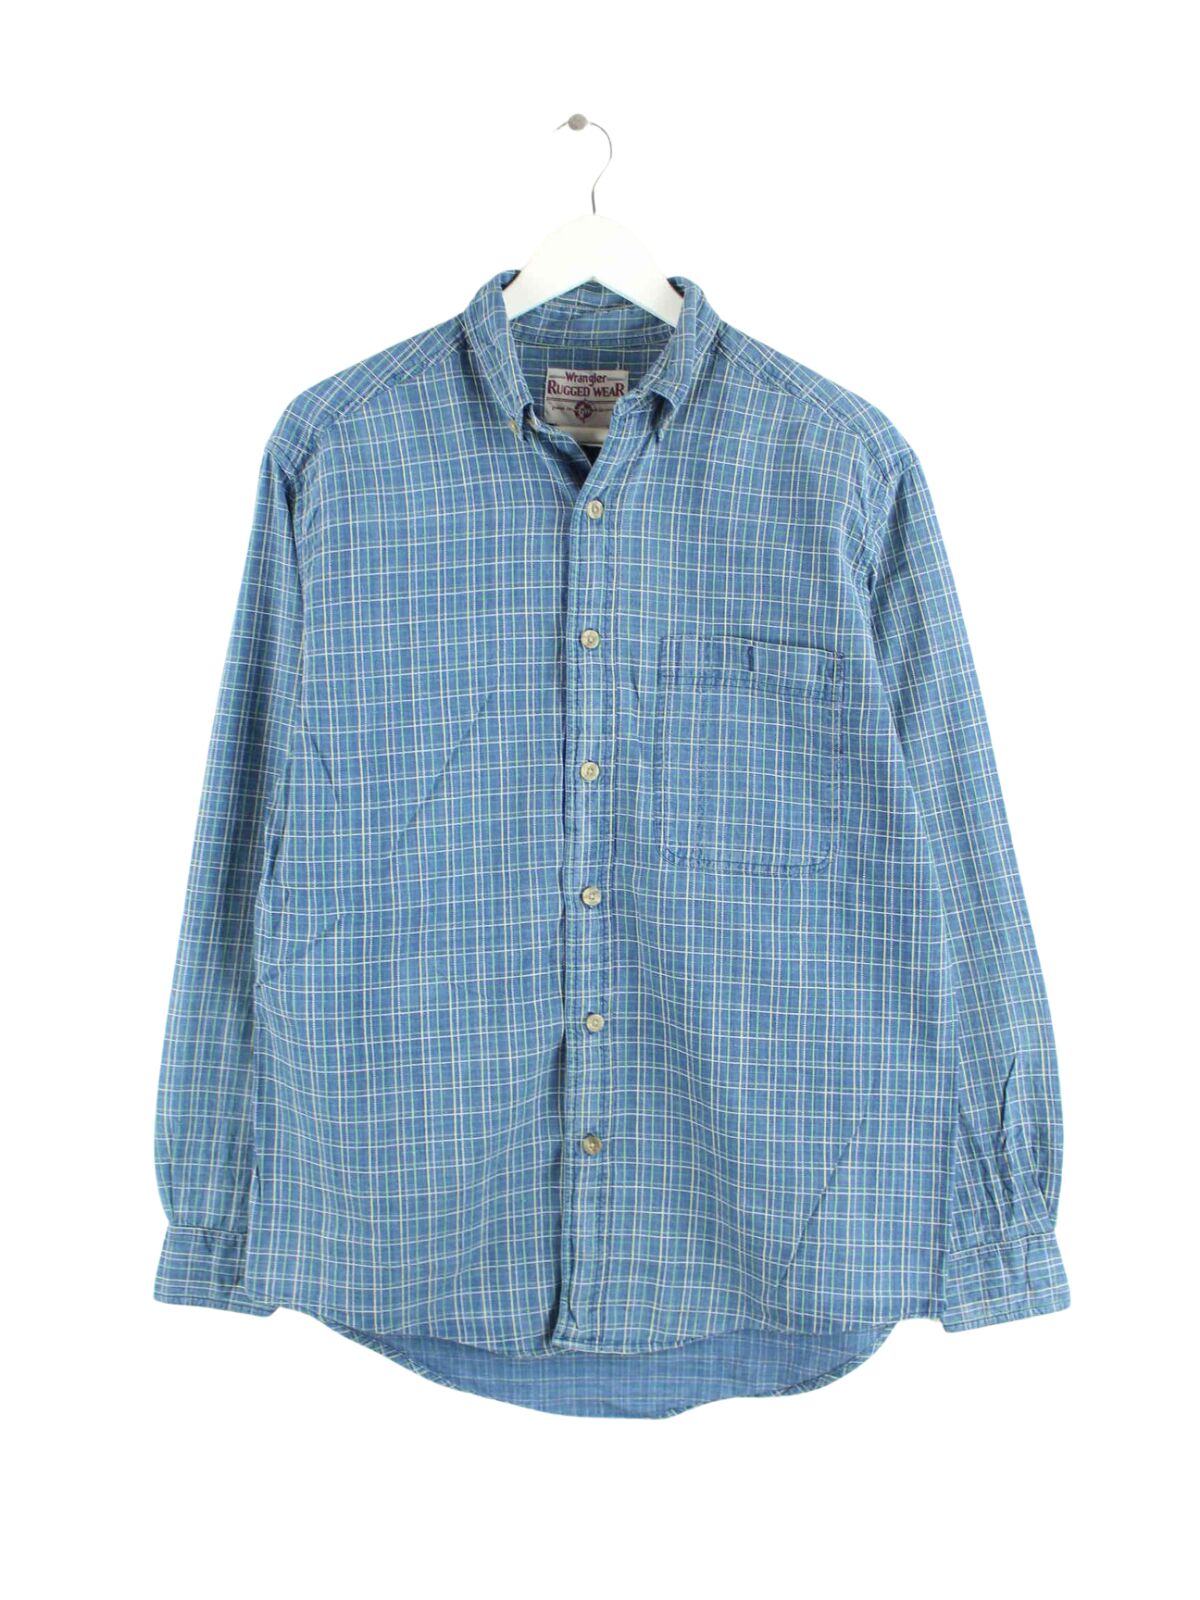 Wrangler 90s Vintage Rugged Wear Hemd Blau L (front image)